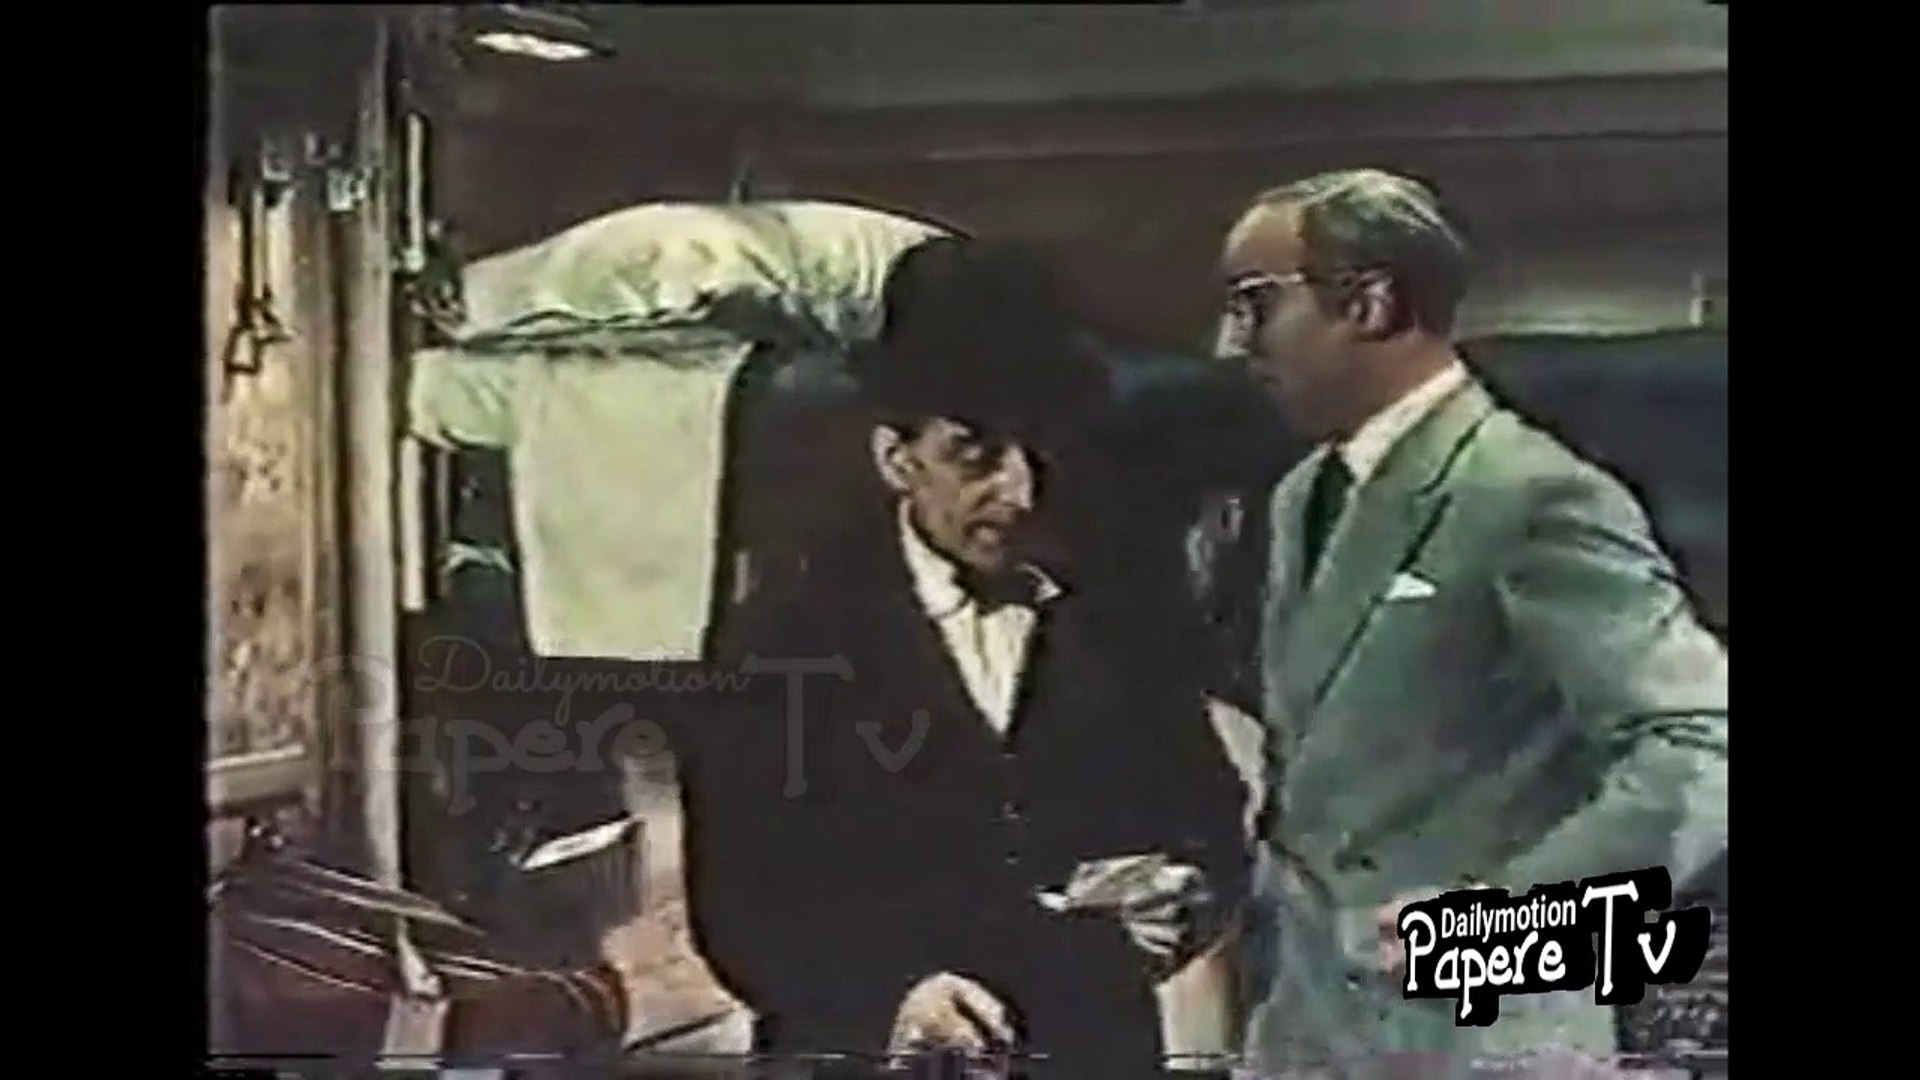 Totò e l'onorevole Trombetta nella cuccetta, scena in treno, vagone letto  tratta da Totò A Colori - Video Dailymotion